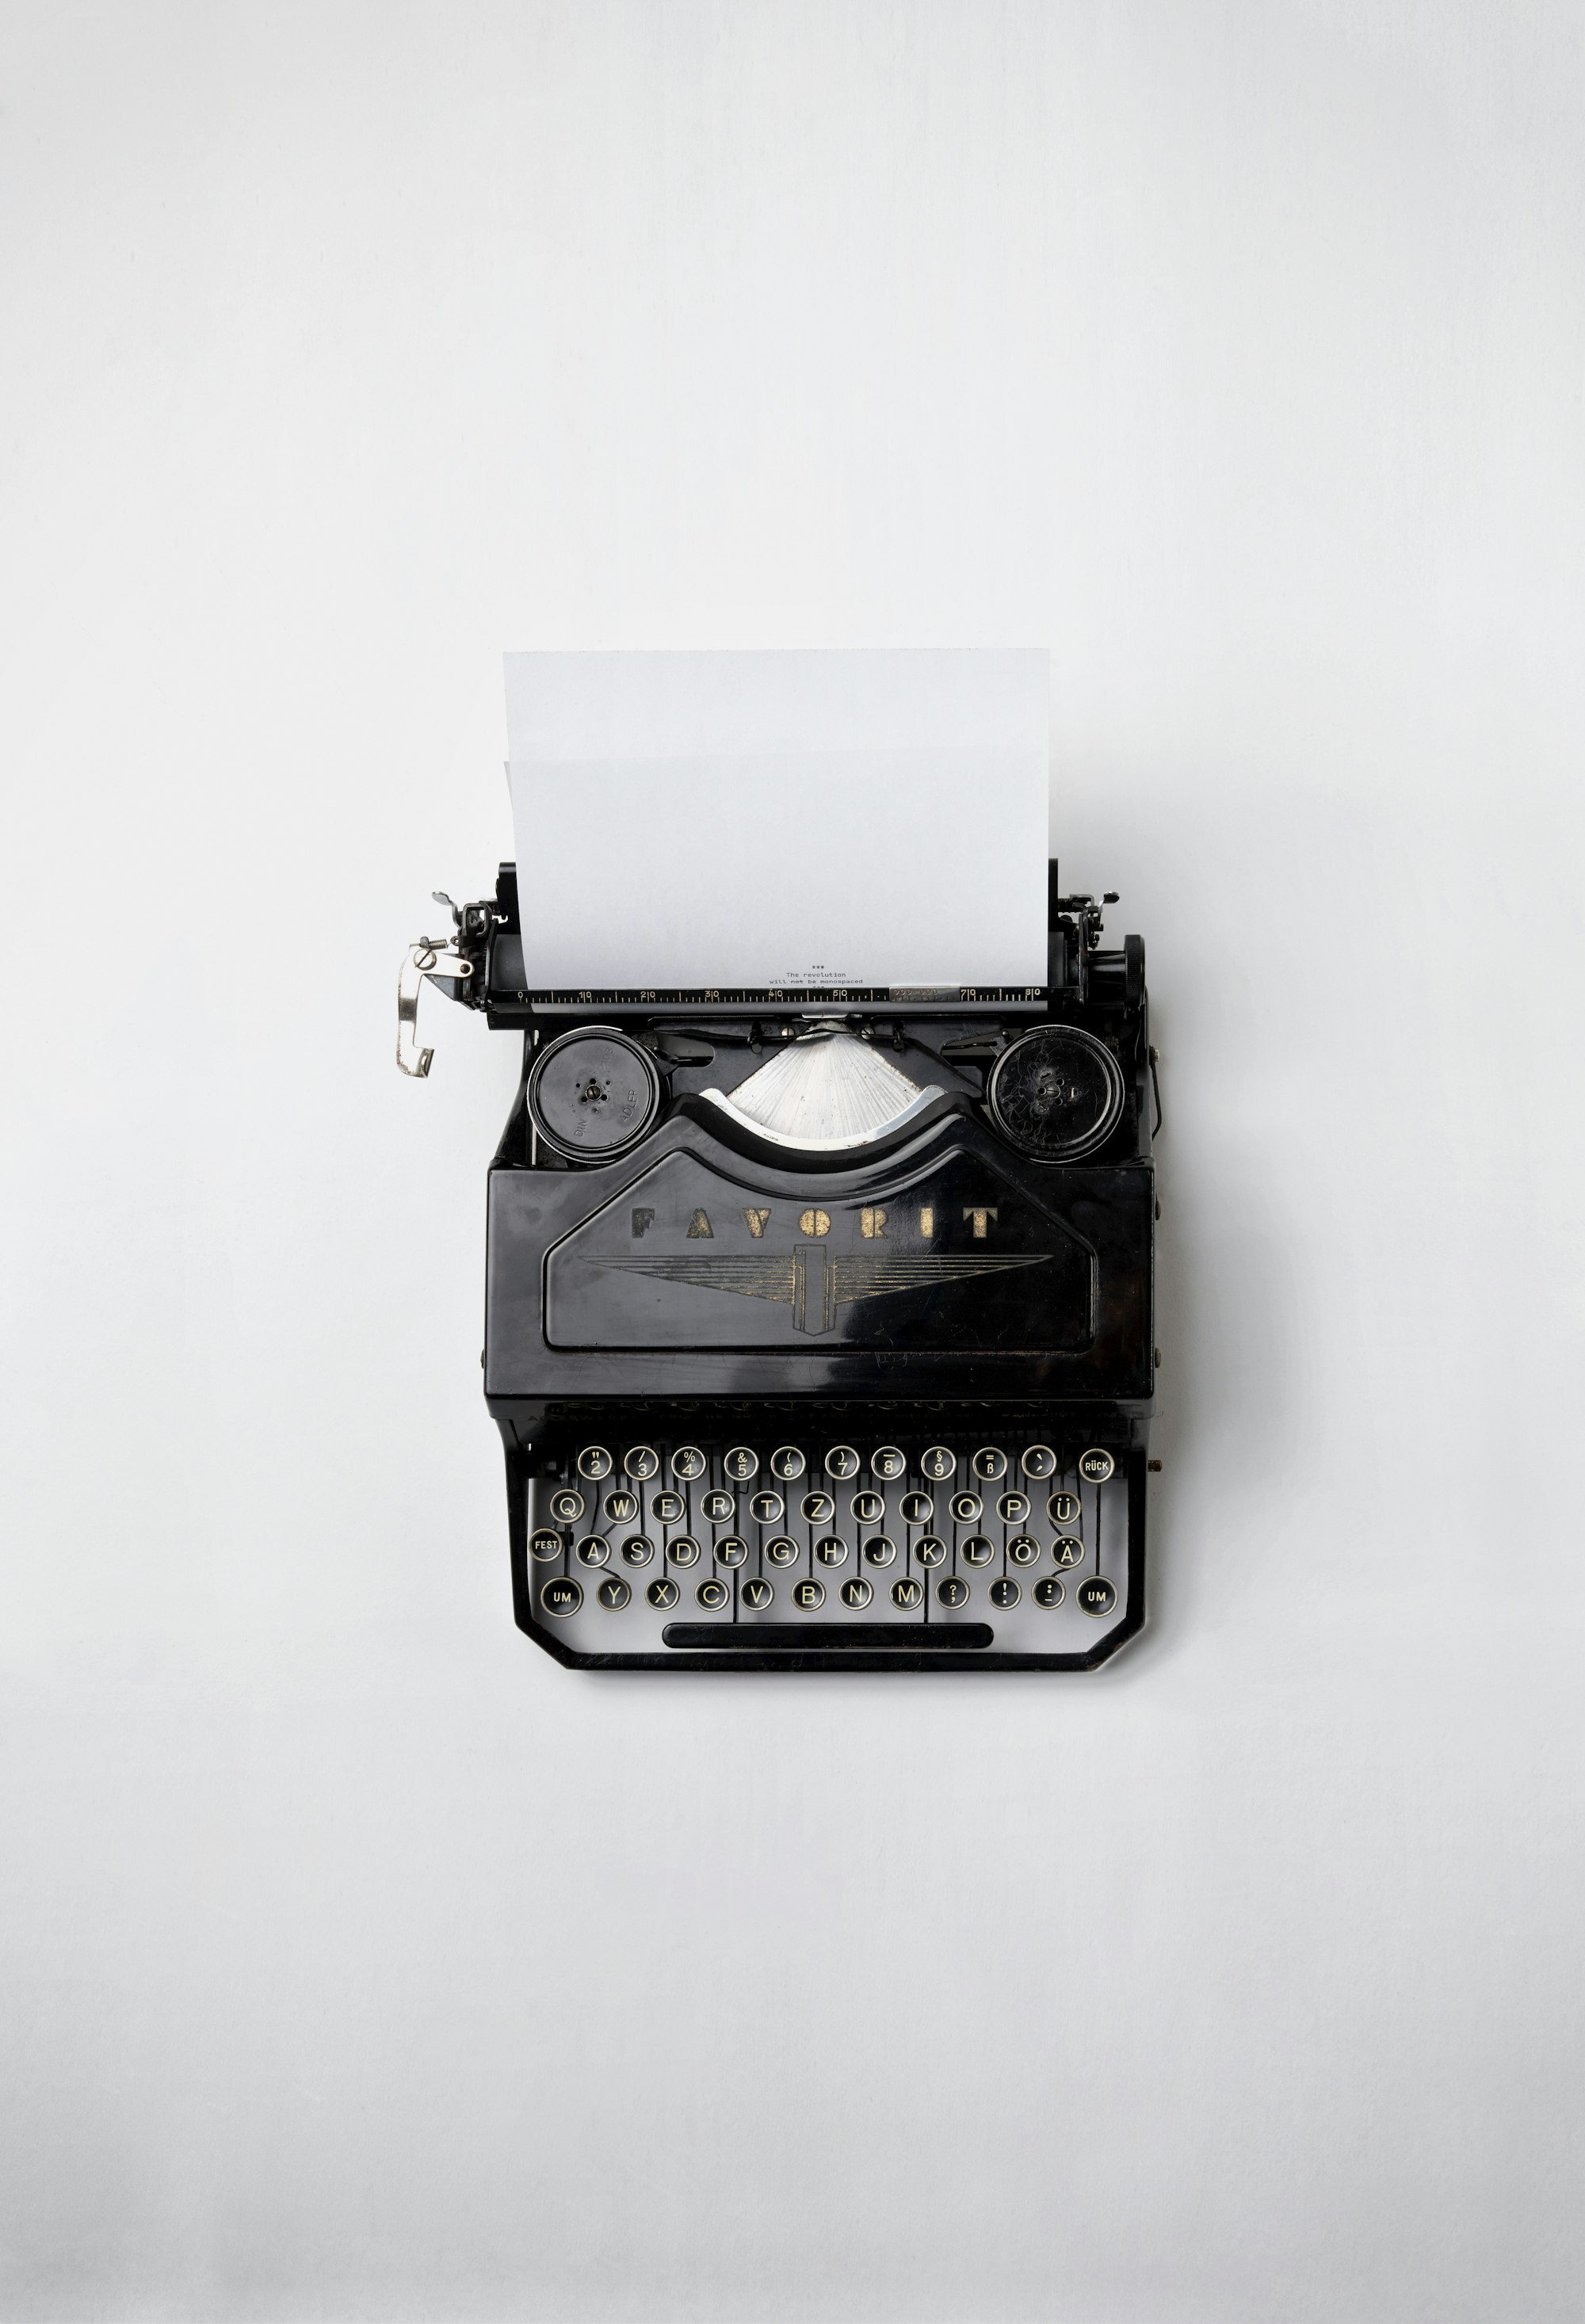 Typewriter on a white surface